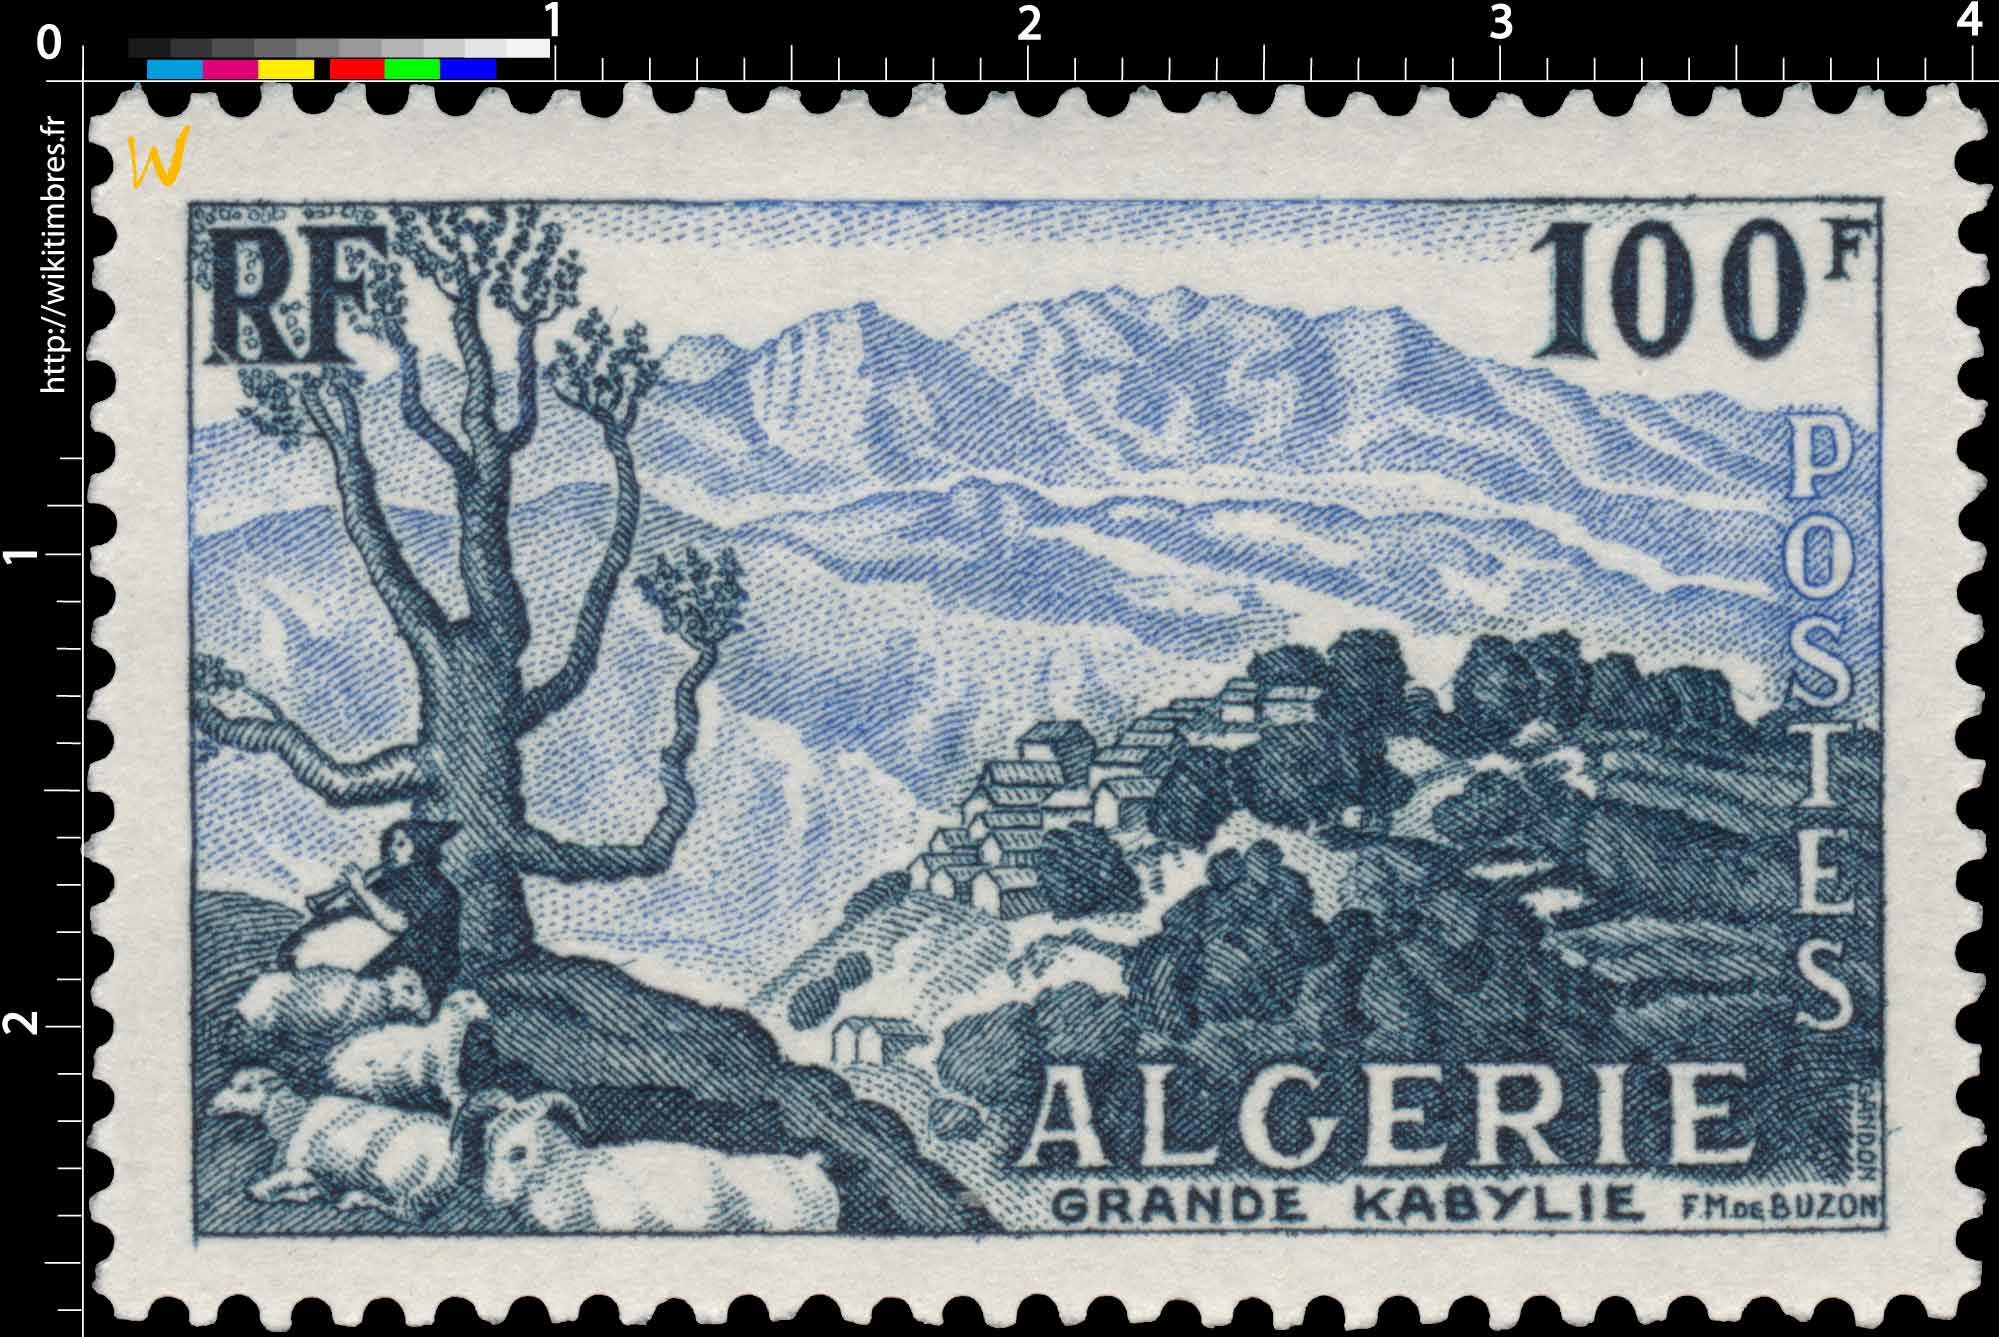 Algérie - Grande Kabylie